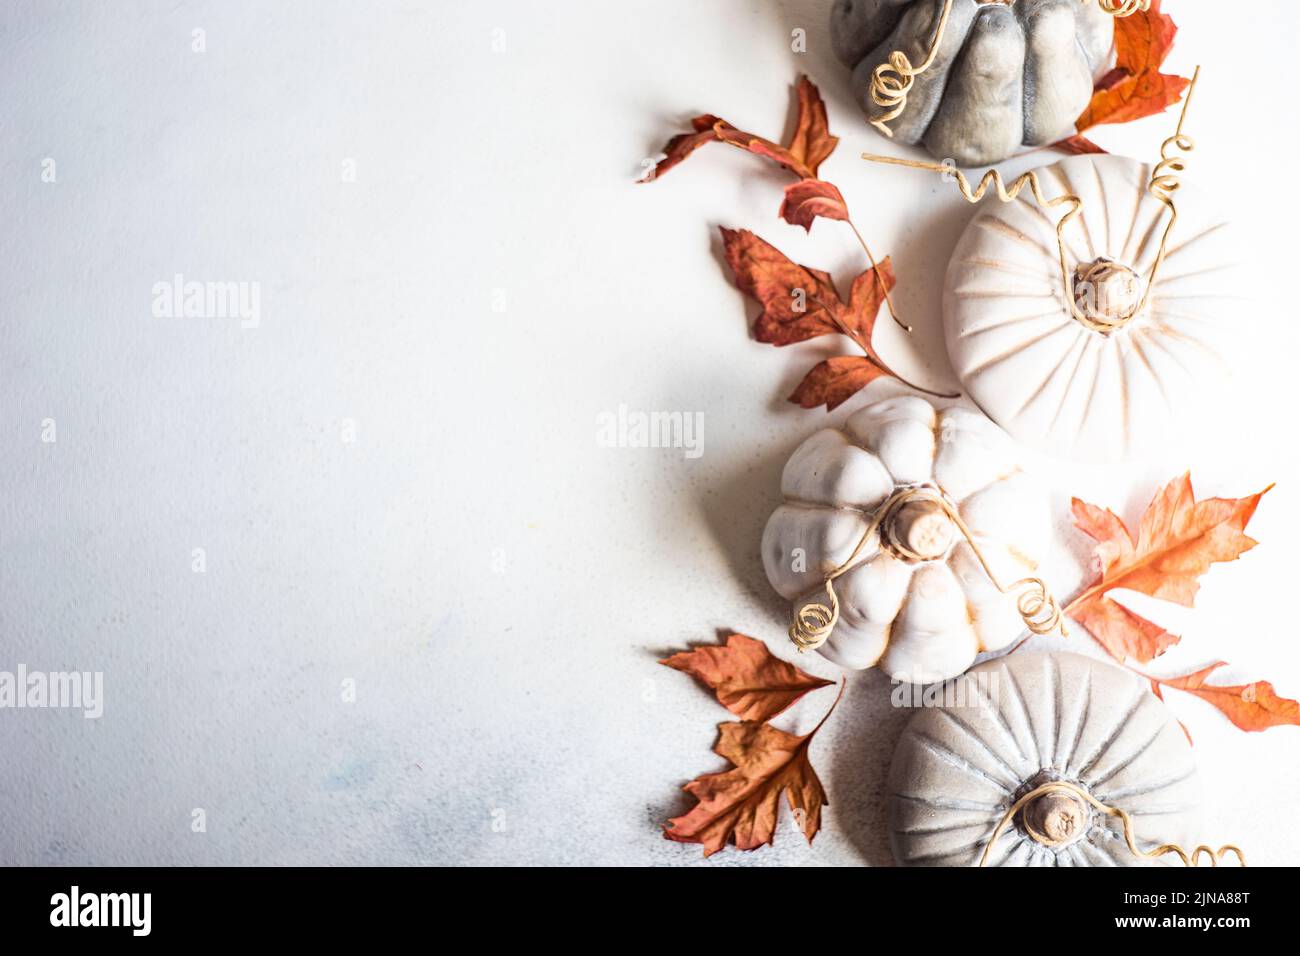 Concepto de tarjeta otoñal con calabaza de cerámica y hojas secas sobre fondo de hormigón Foto de stock